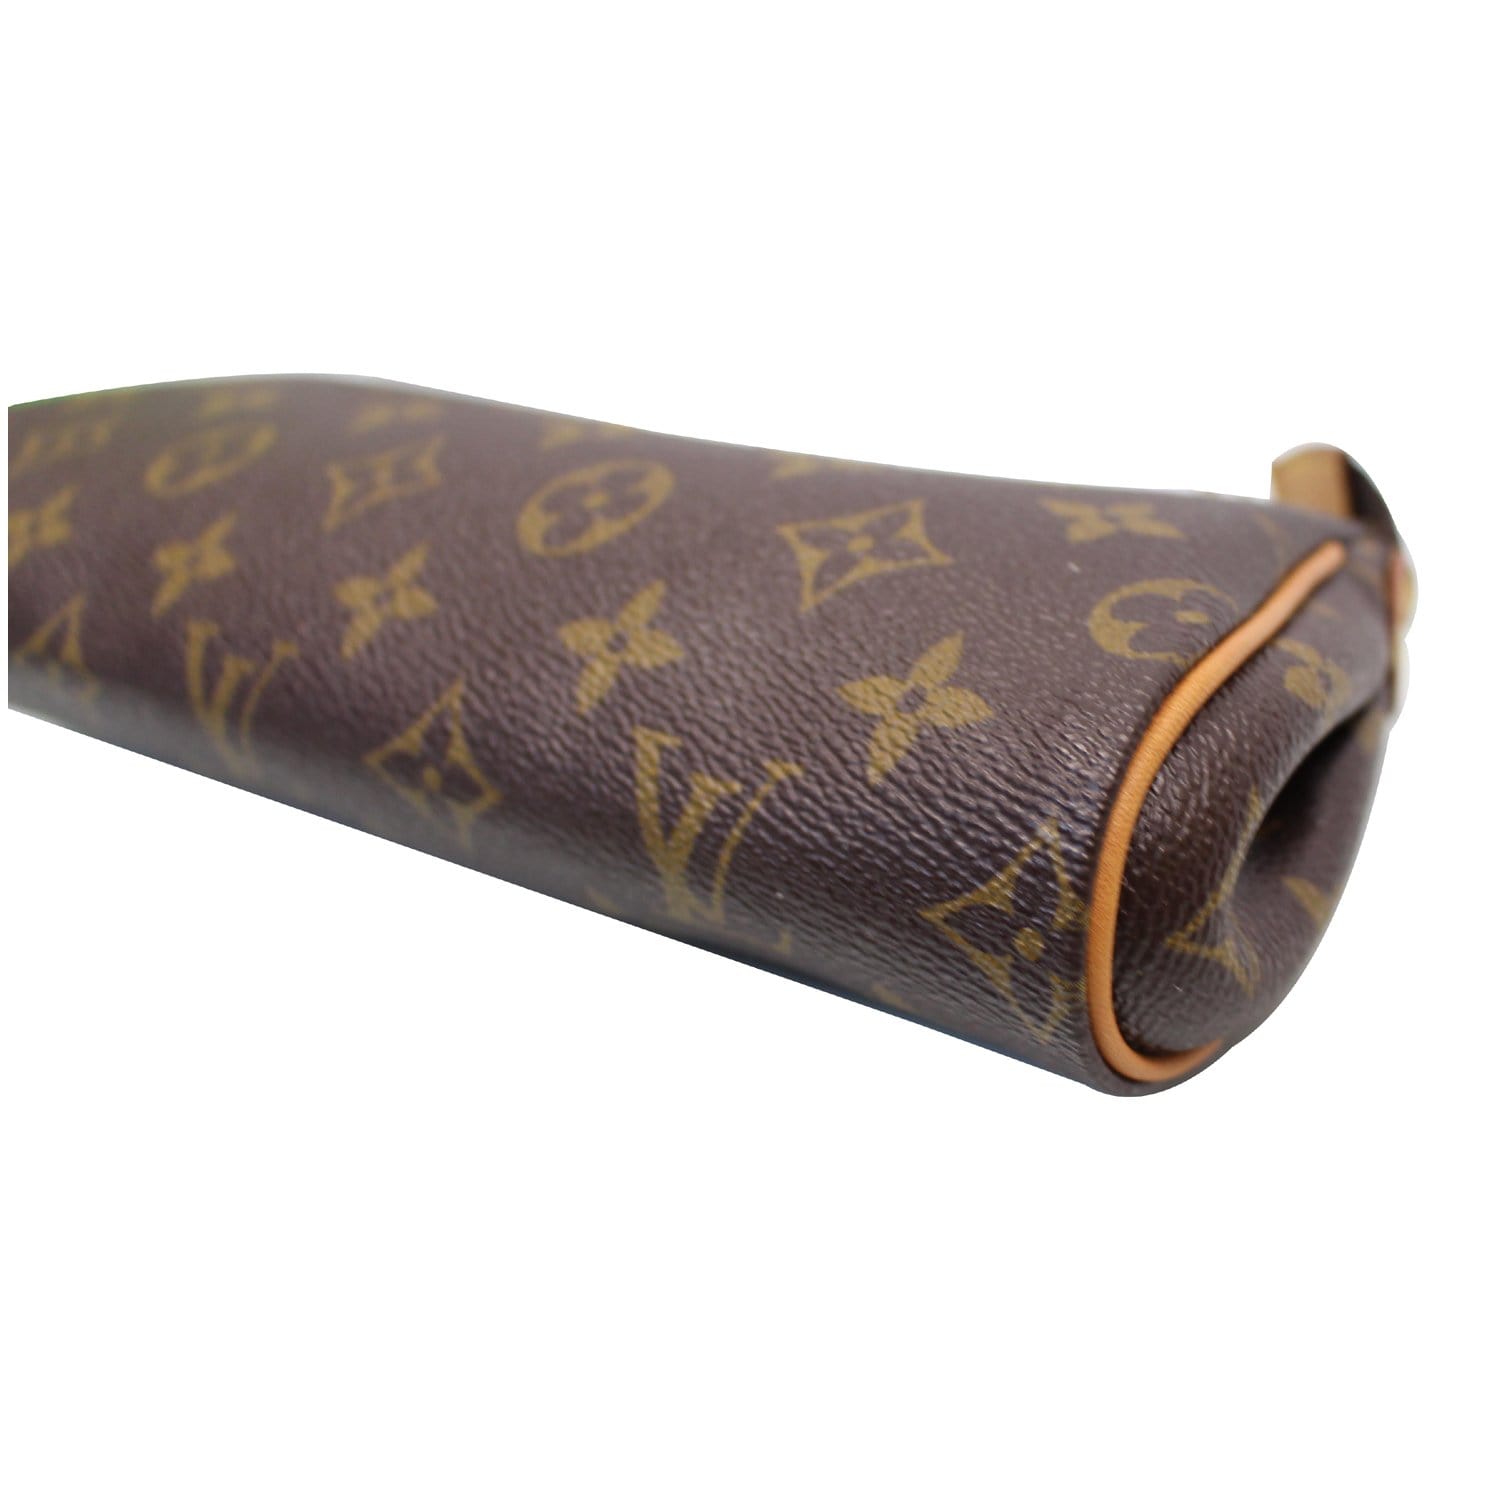 $700 Louis Vuitton Monogram Canvas Logo Brown Leather LV Eva Pouchette Clutch  Bag - Lust4Labels